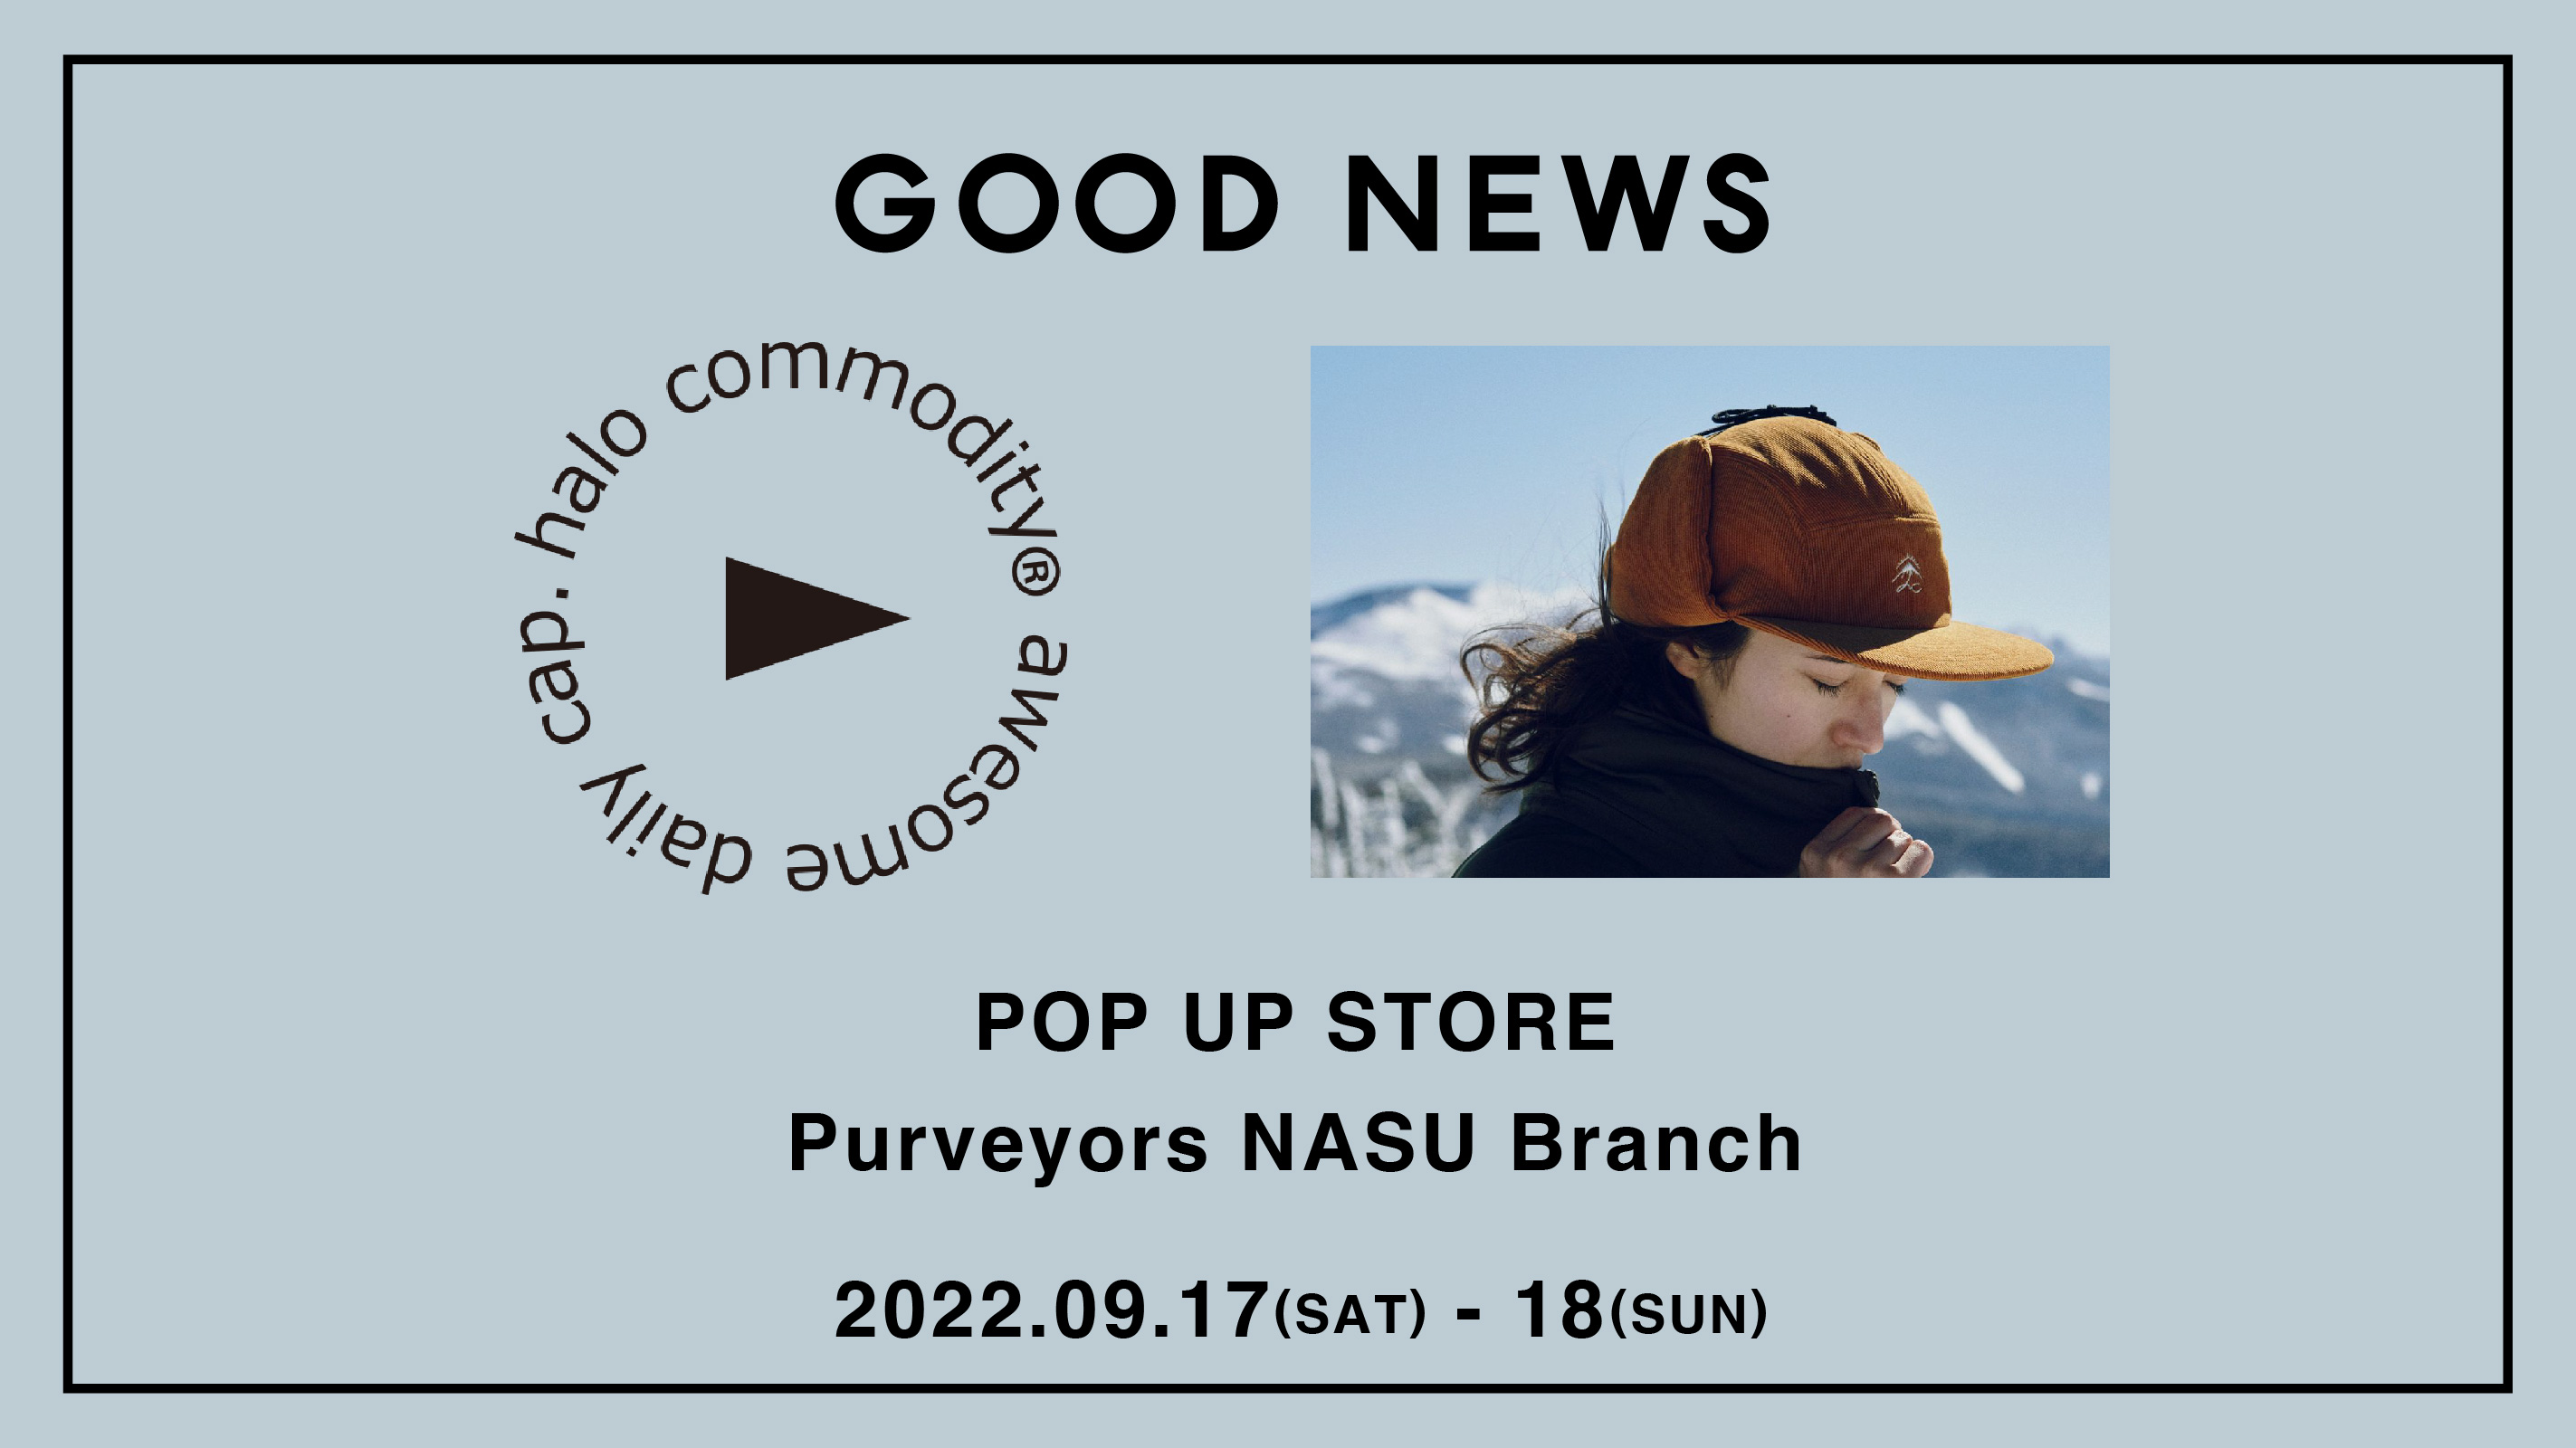 9/17-18 halo commodity 22AW POP UP （at Purveyors NASU Branch, GOOD NEWS）